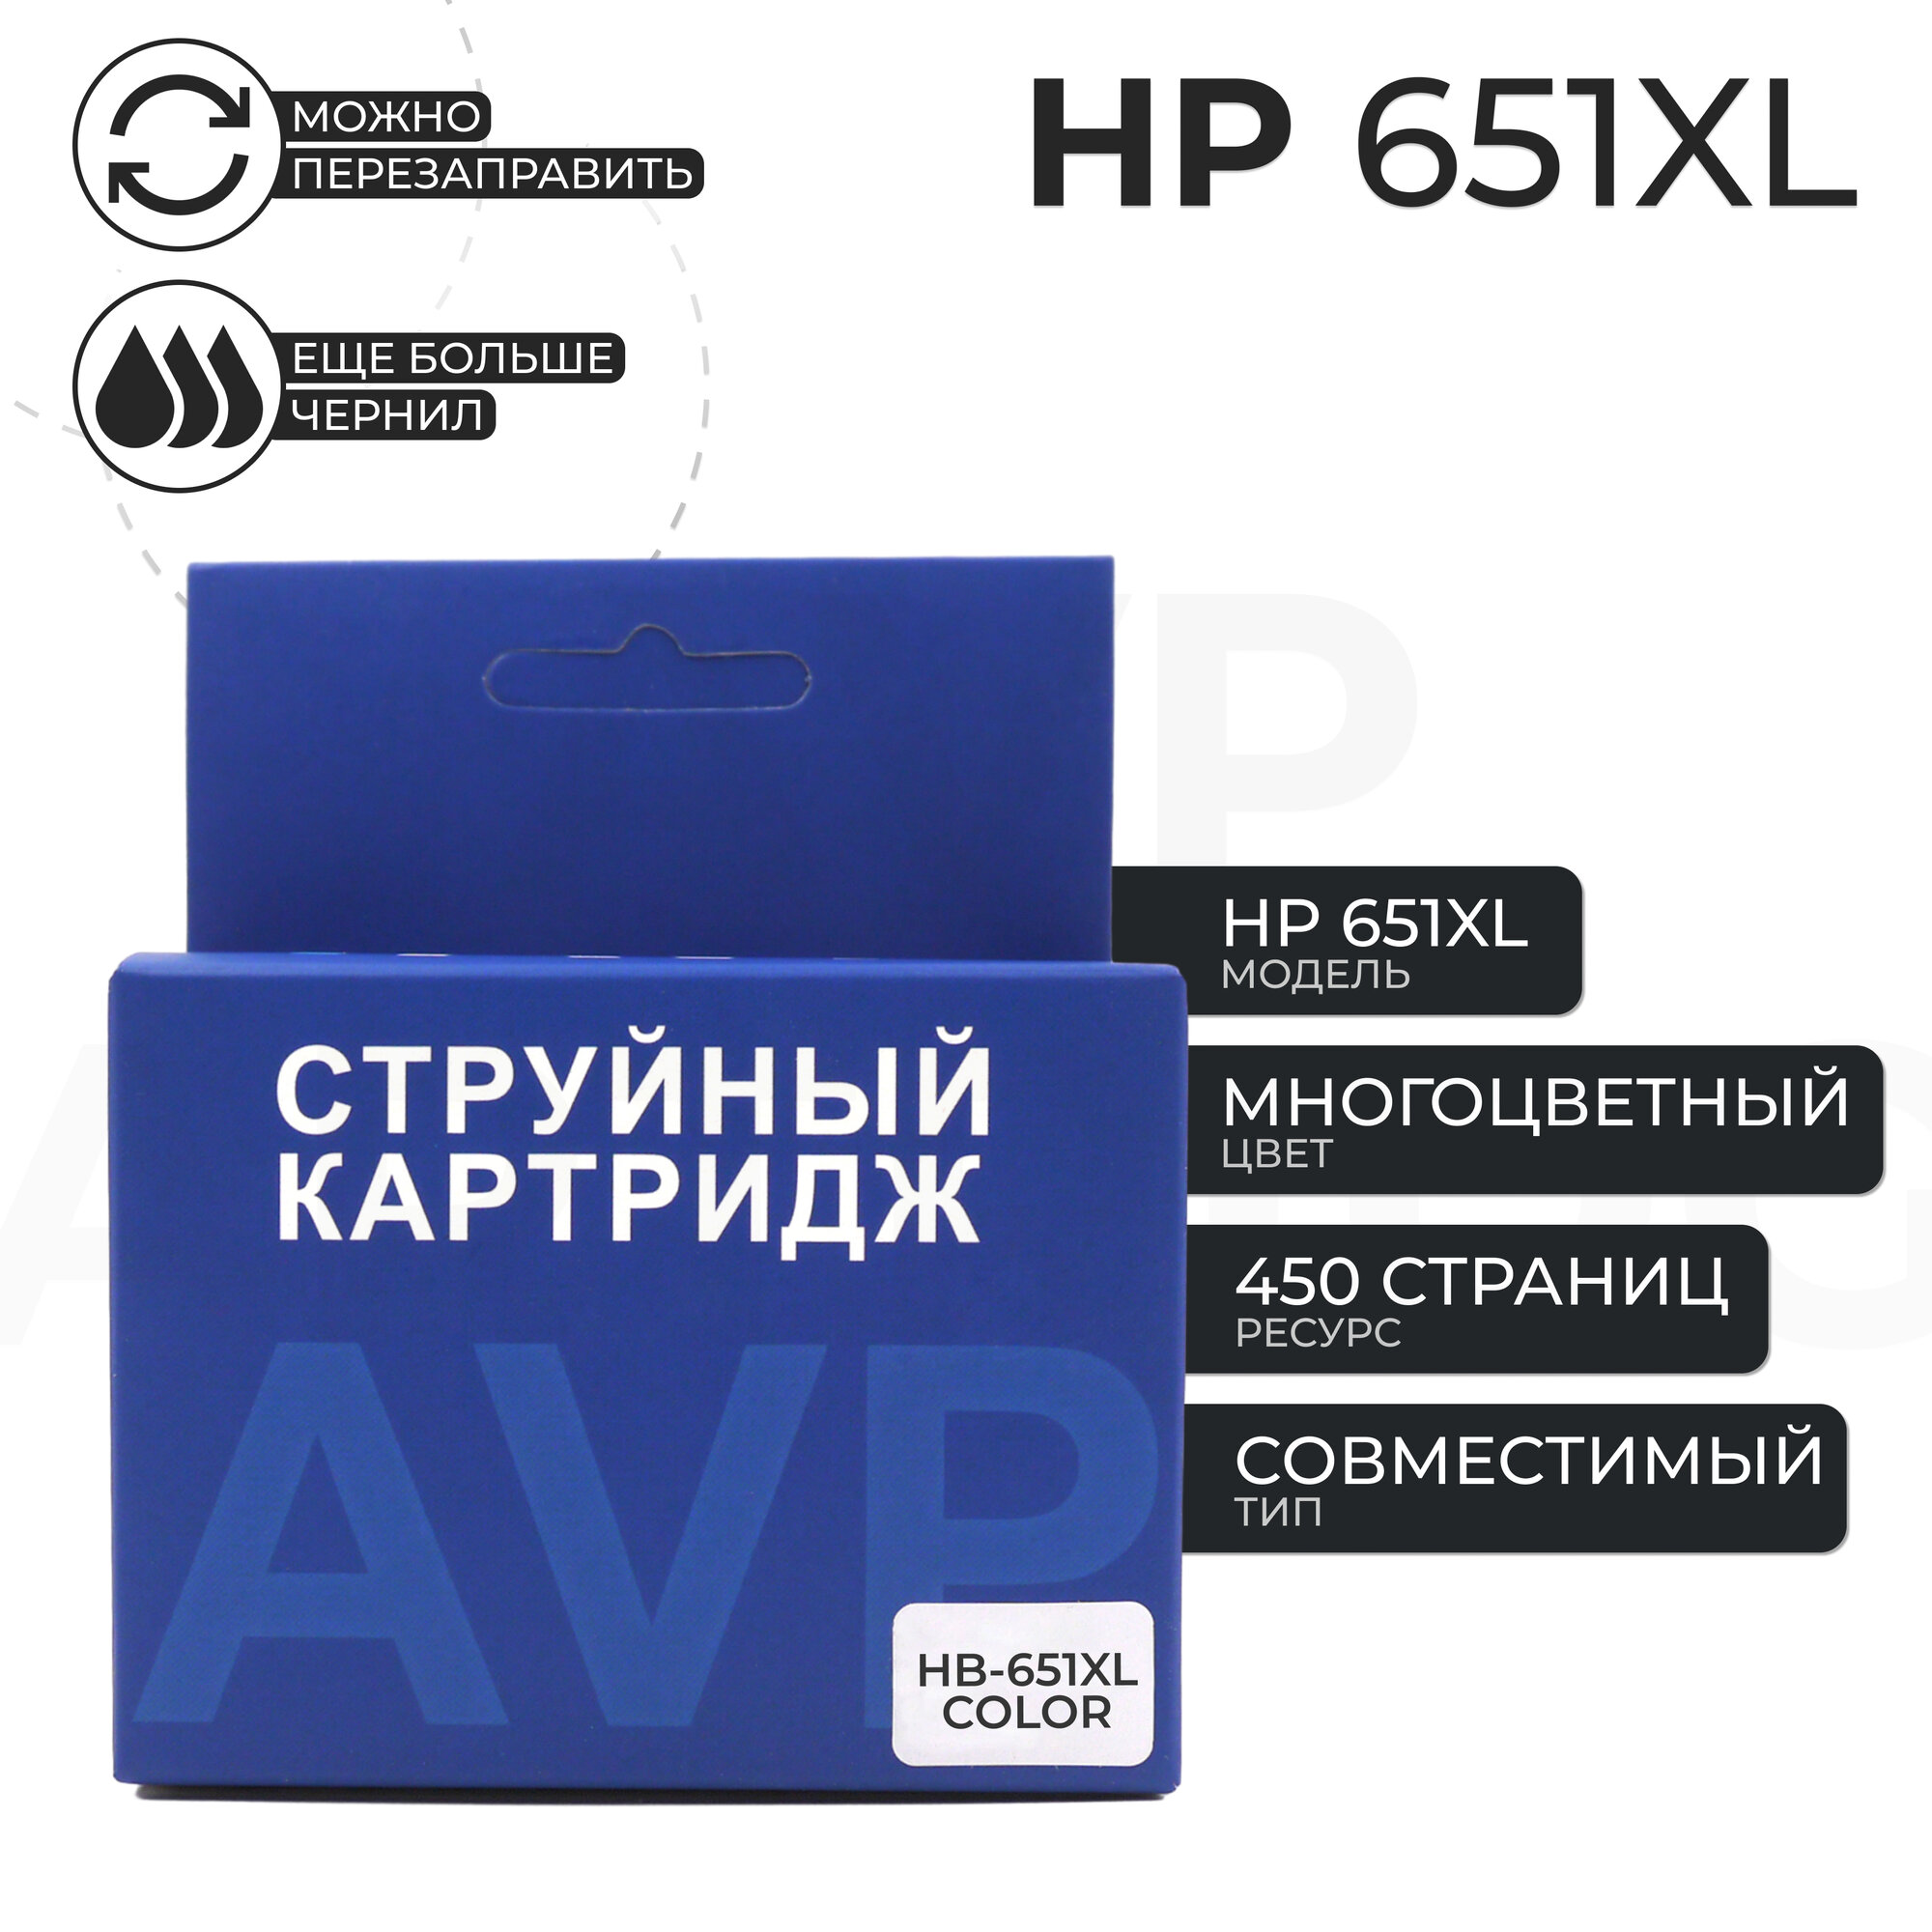 Картридж HP 651 XL (651XL), цветной